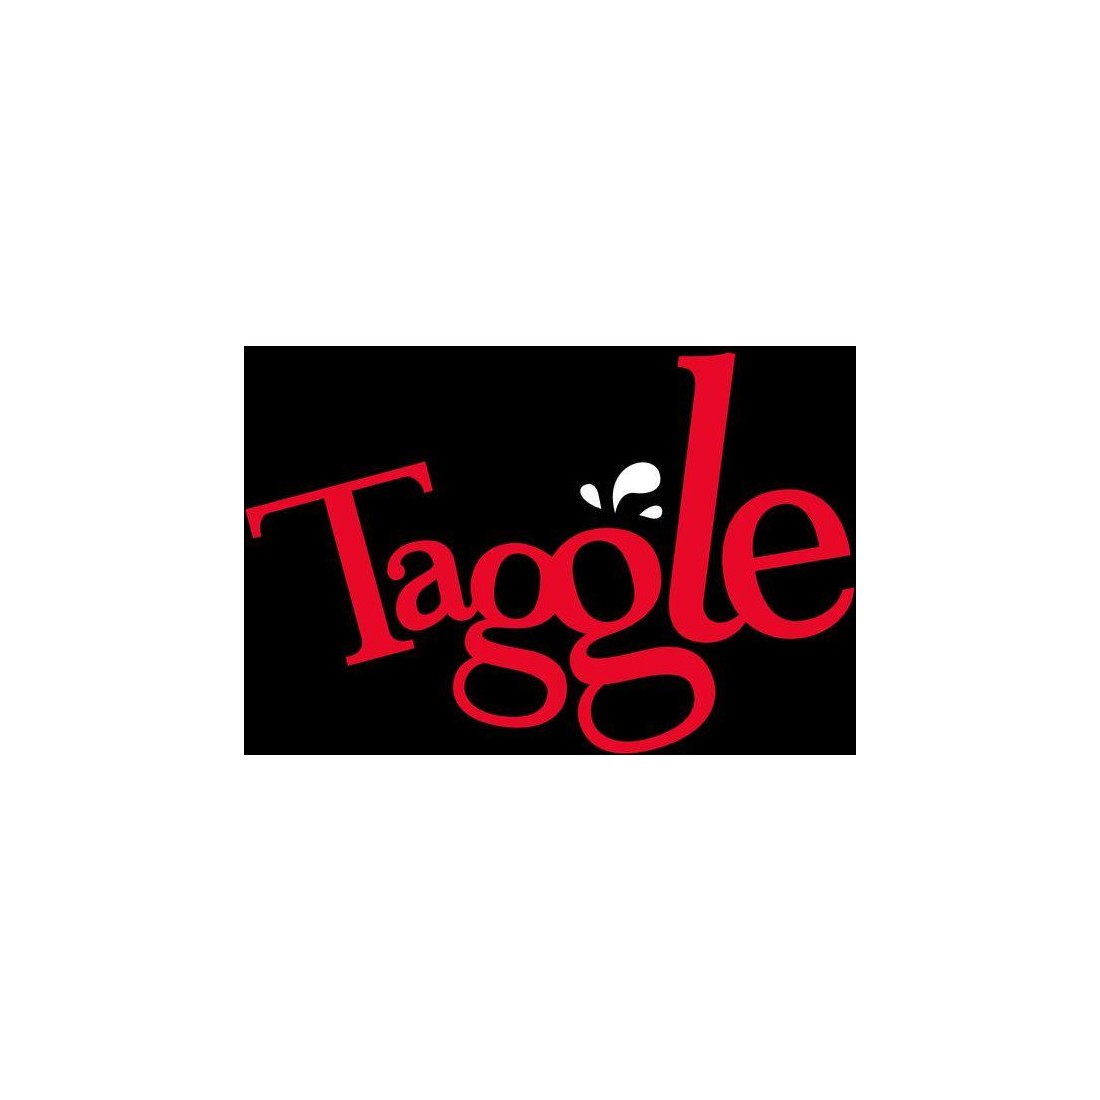 Taggle - Jeu de société - ledroitdeperdre.com - Le Droit De Perdre